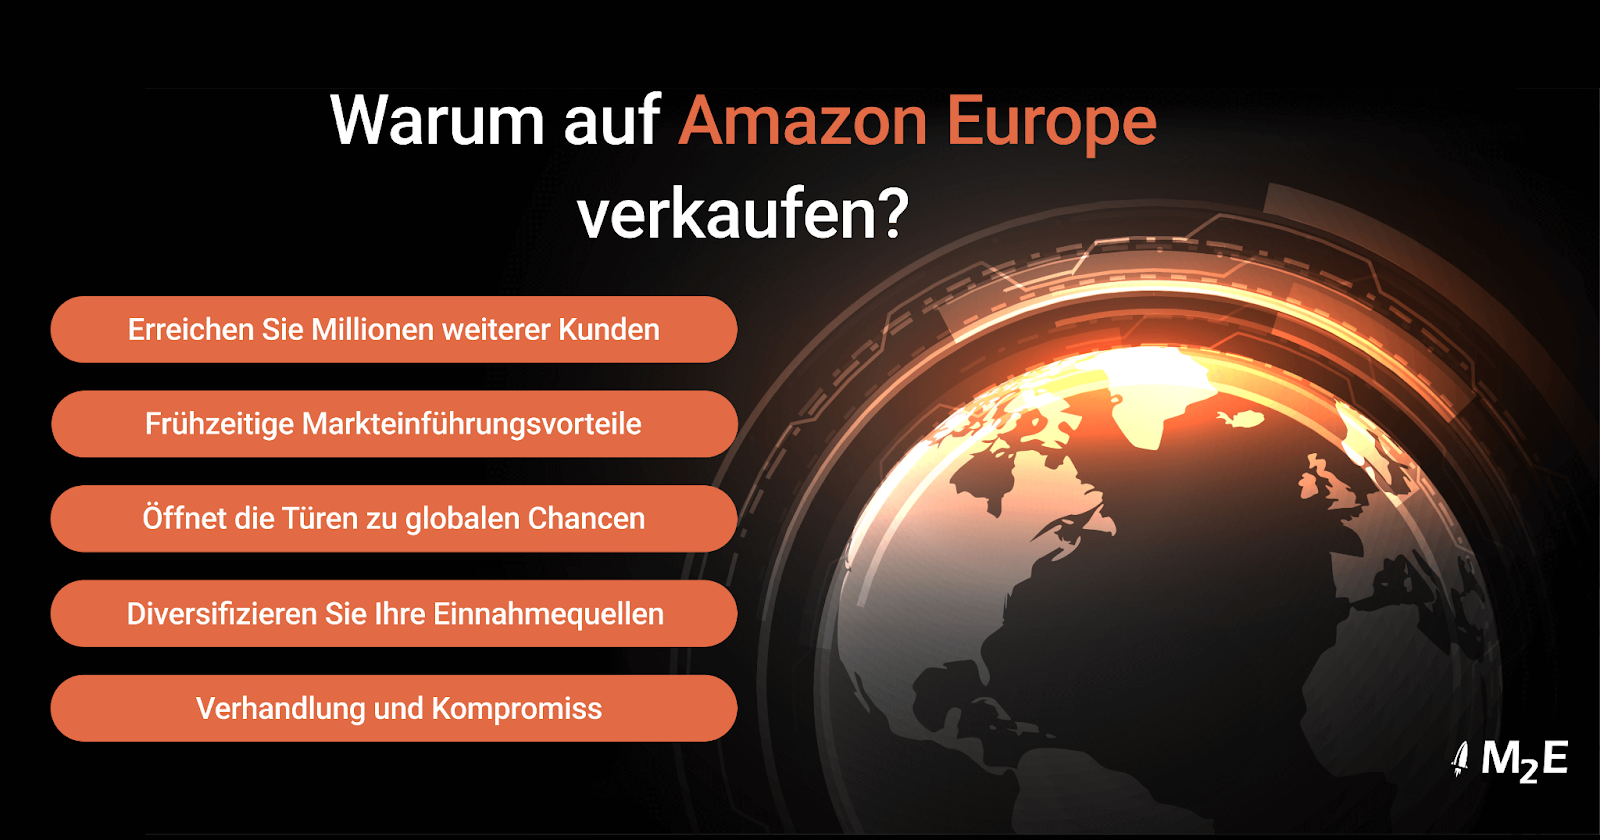 Warum auf Amazon Europe verkaufen?